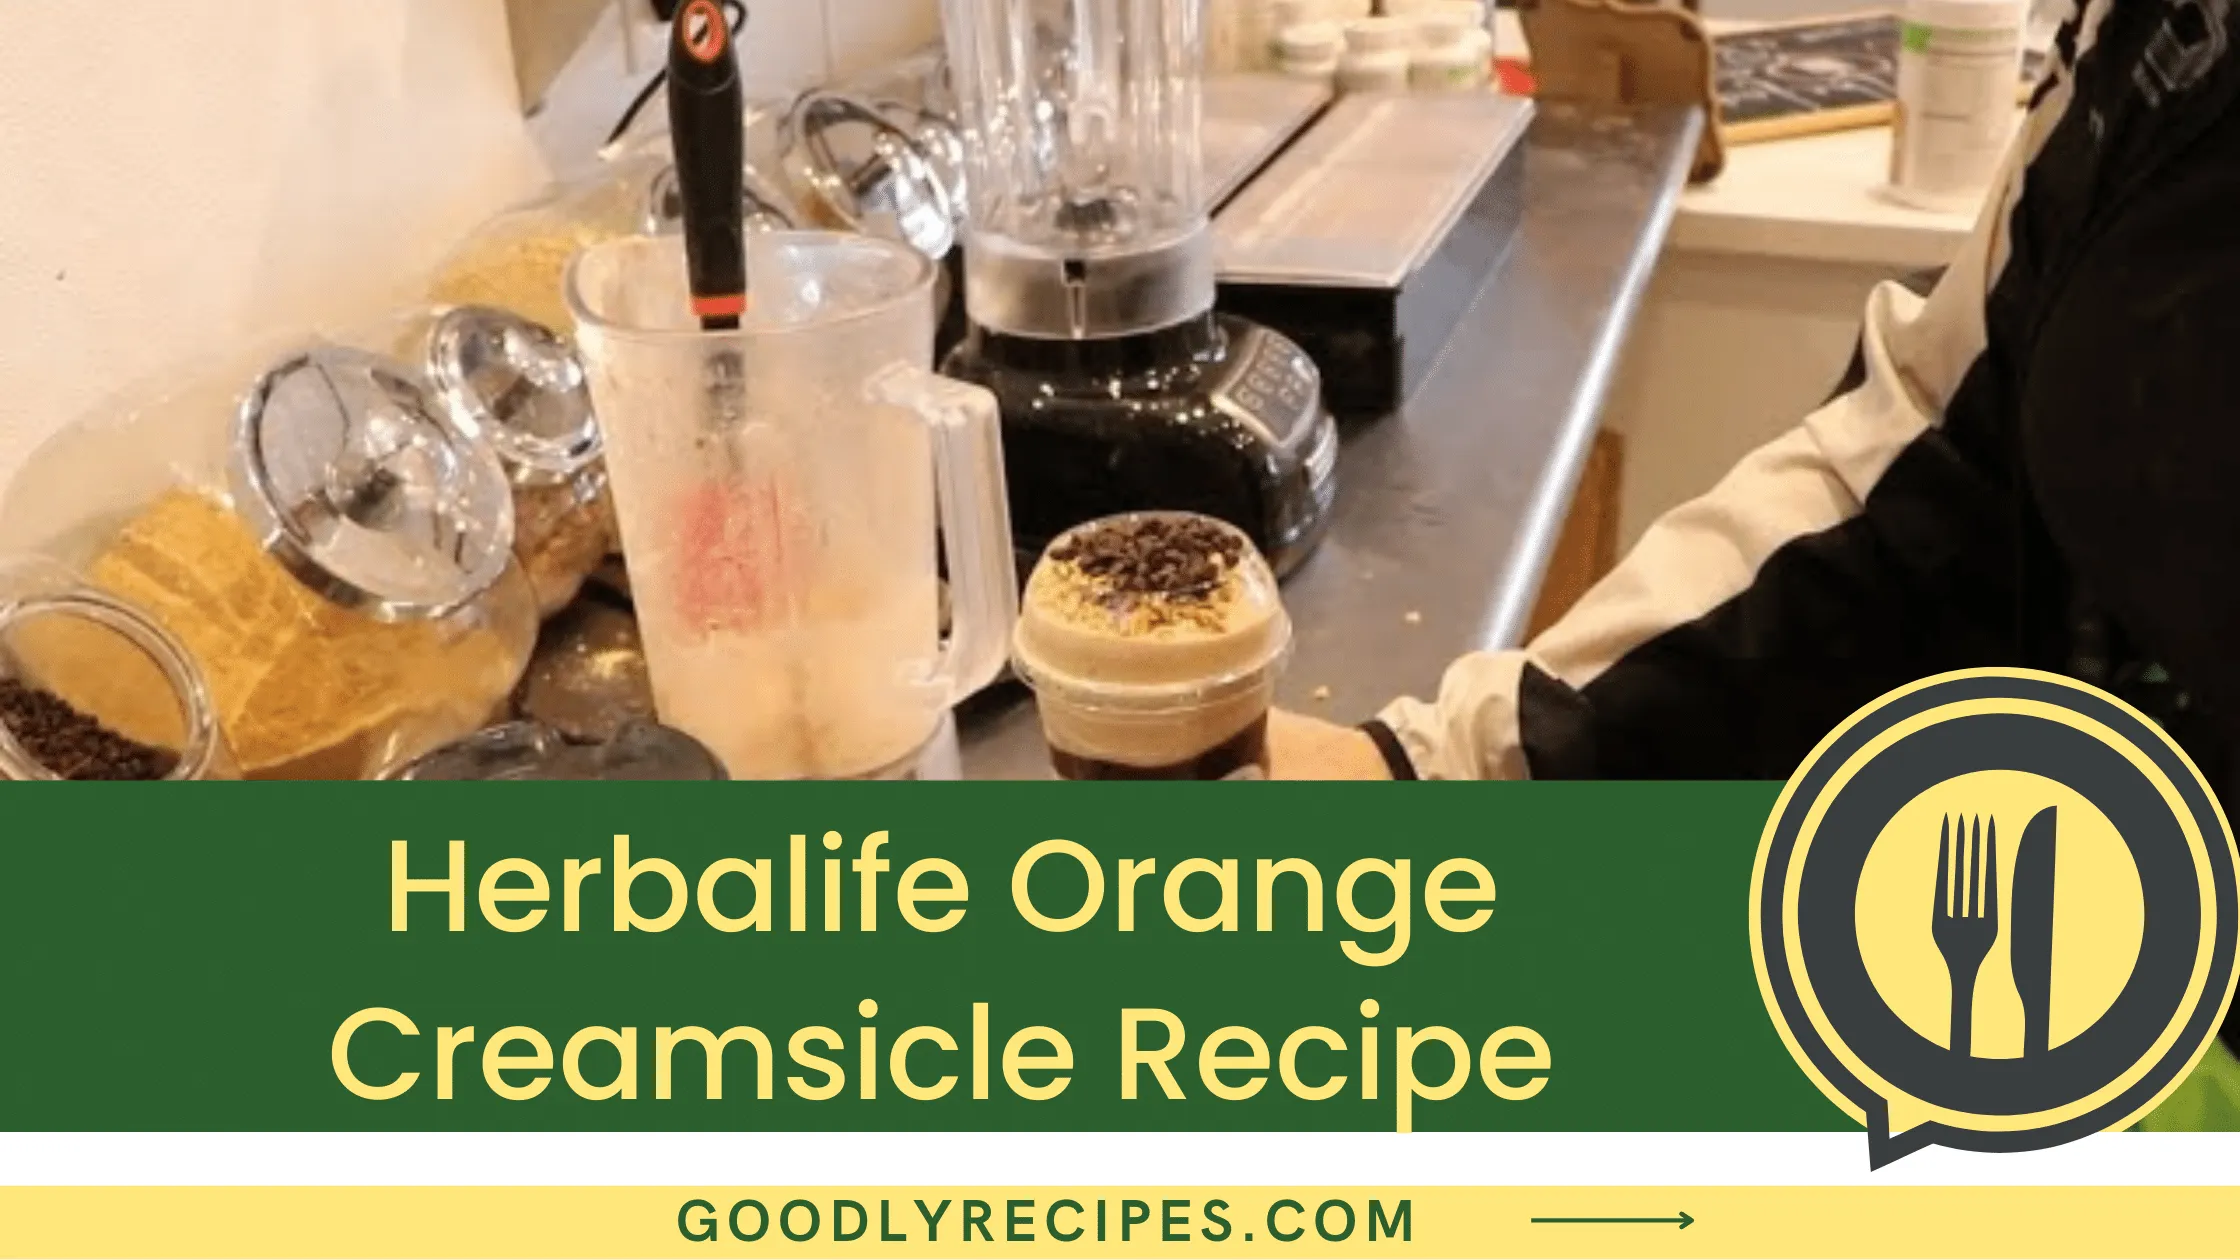 Herbalife Orange Creamsicle Recipe - For Food Lovers